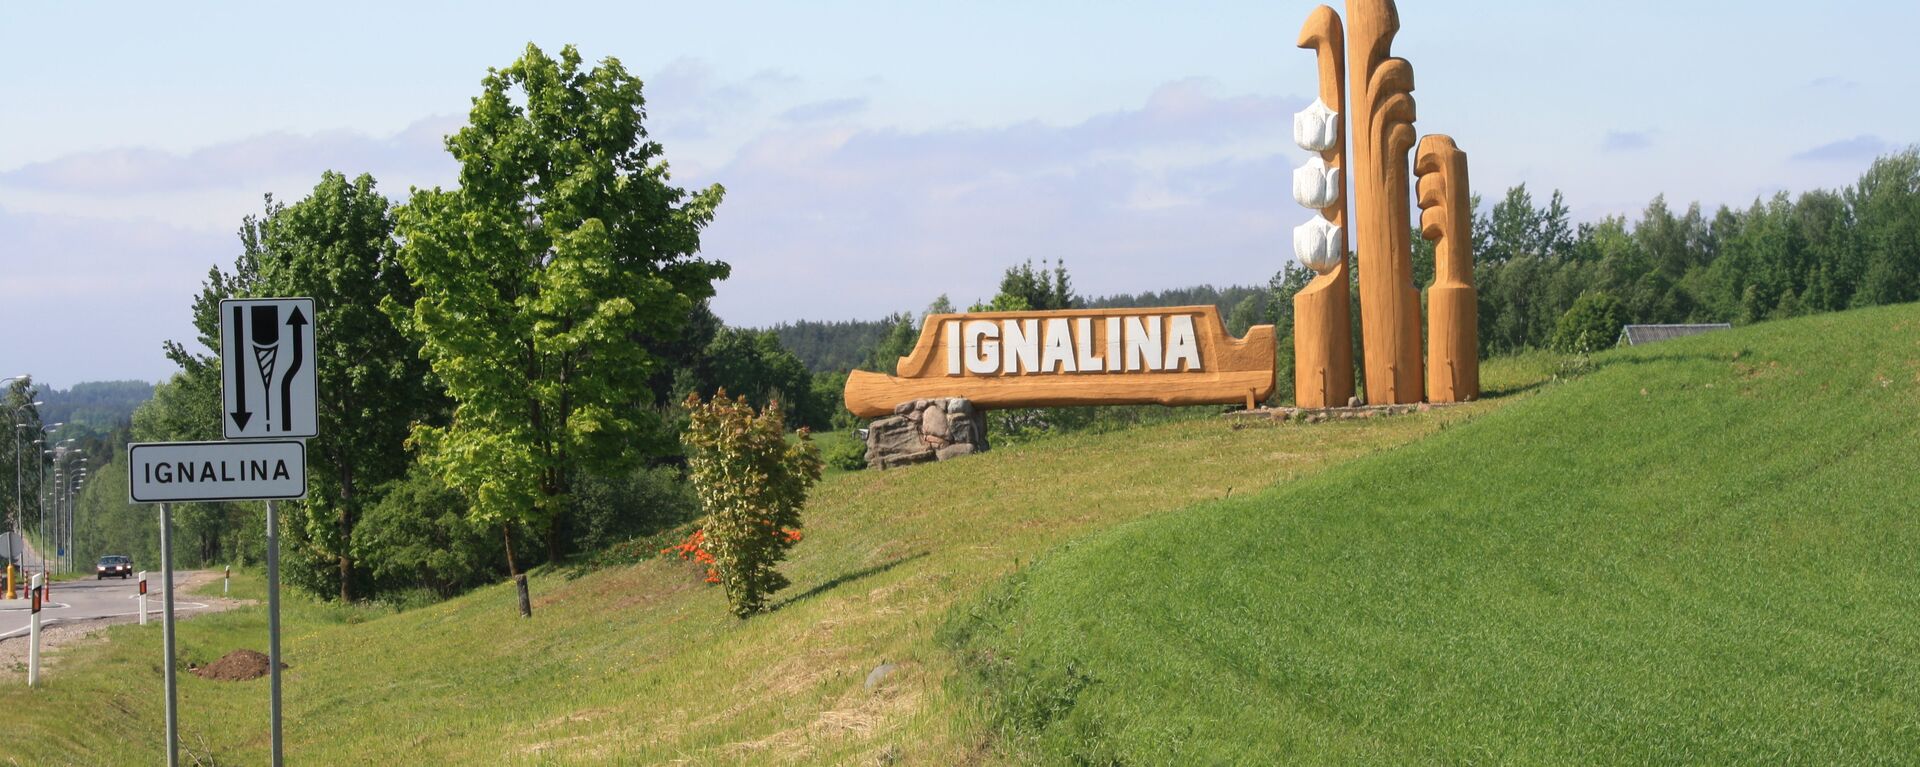 Ignalina - Sputnik Lietuva, 1920, 04.08.2021